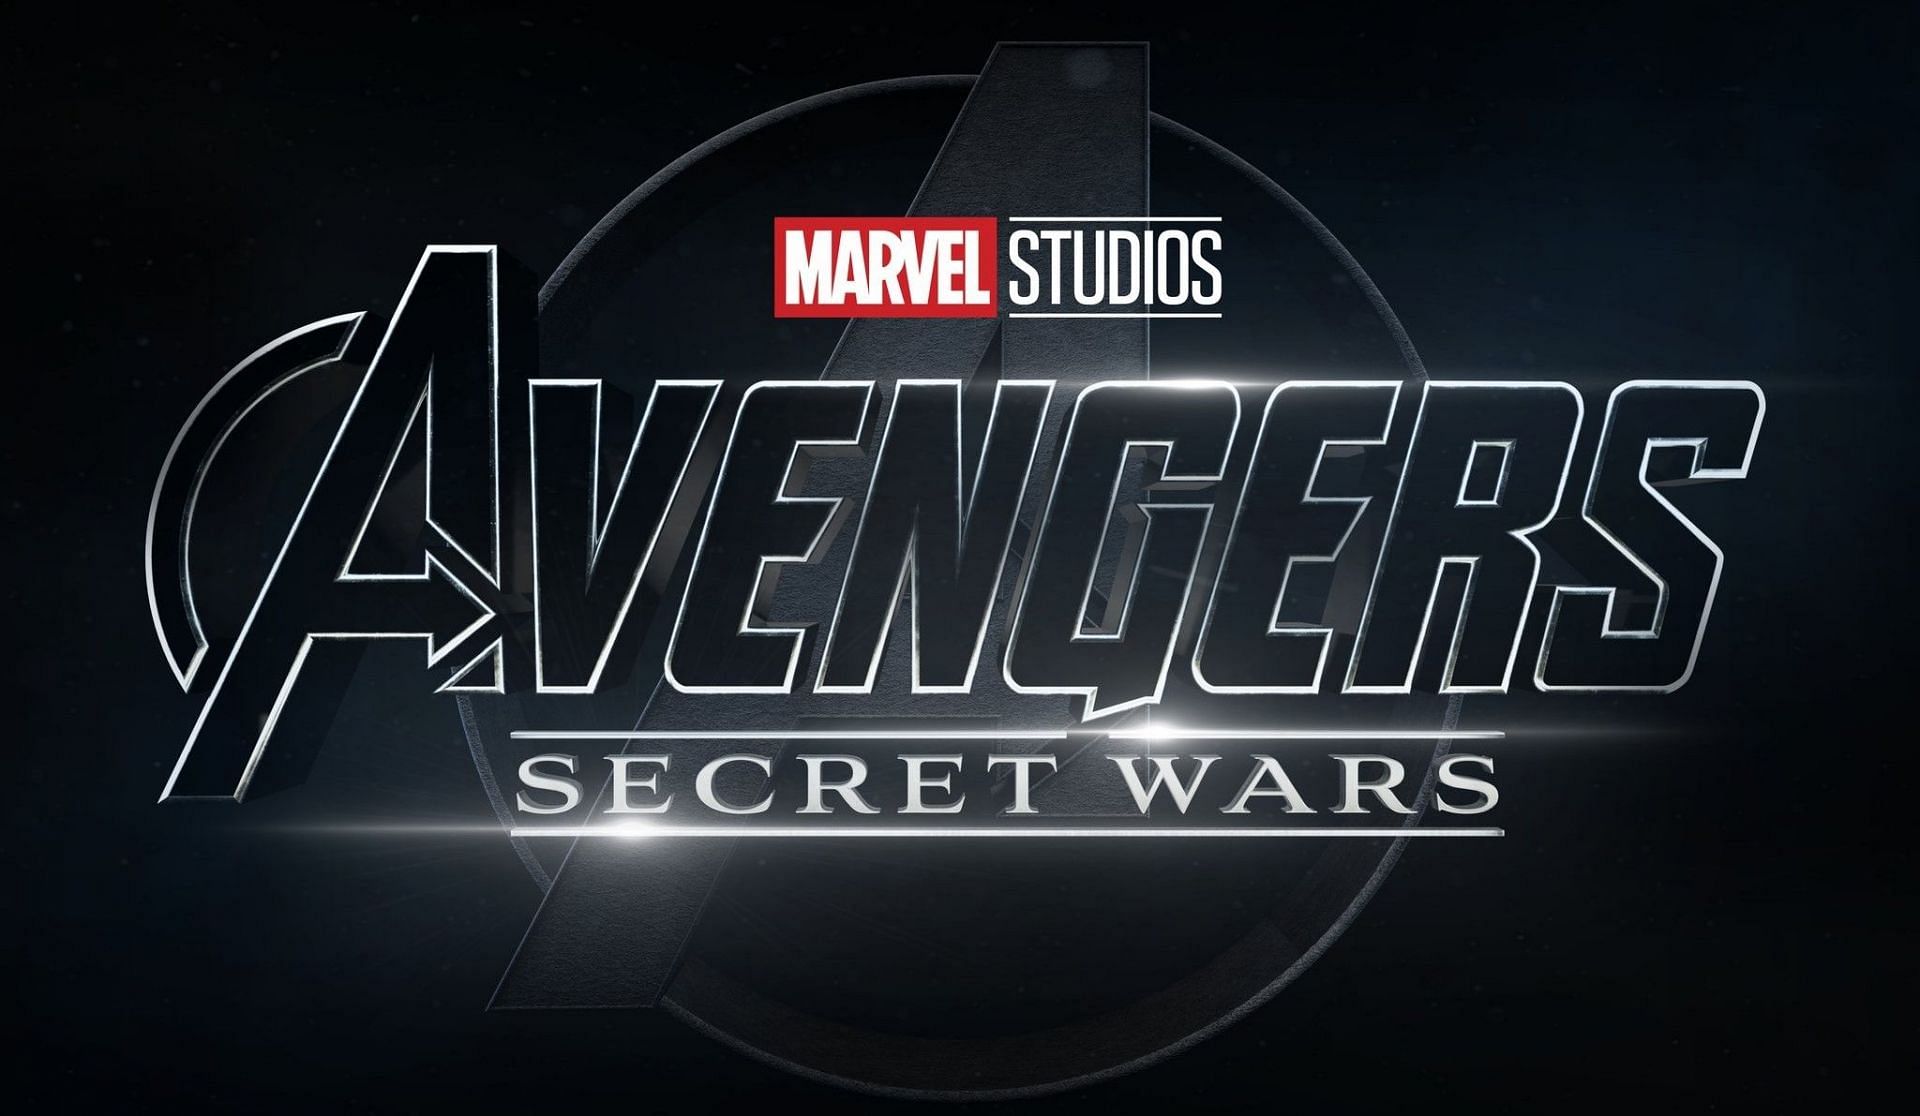 Avengers Secret Wars (Image via Marvel)